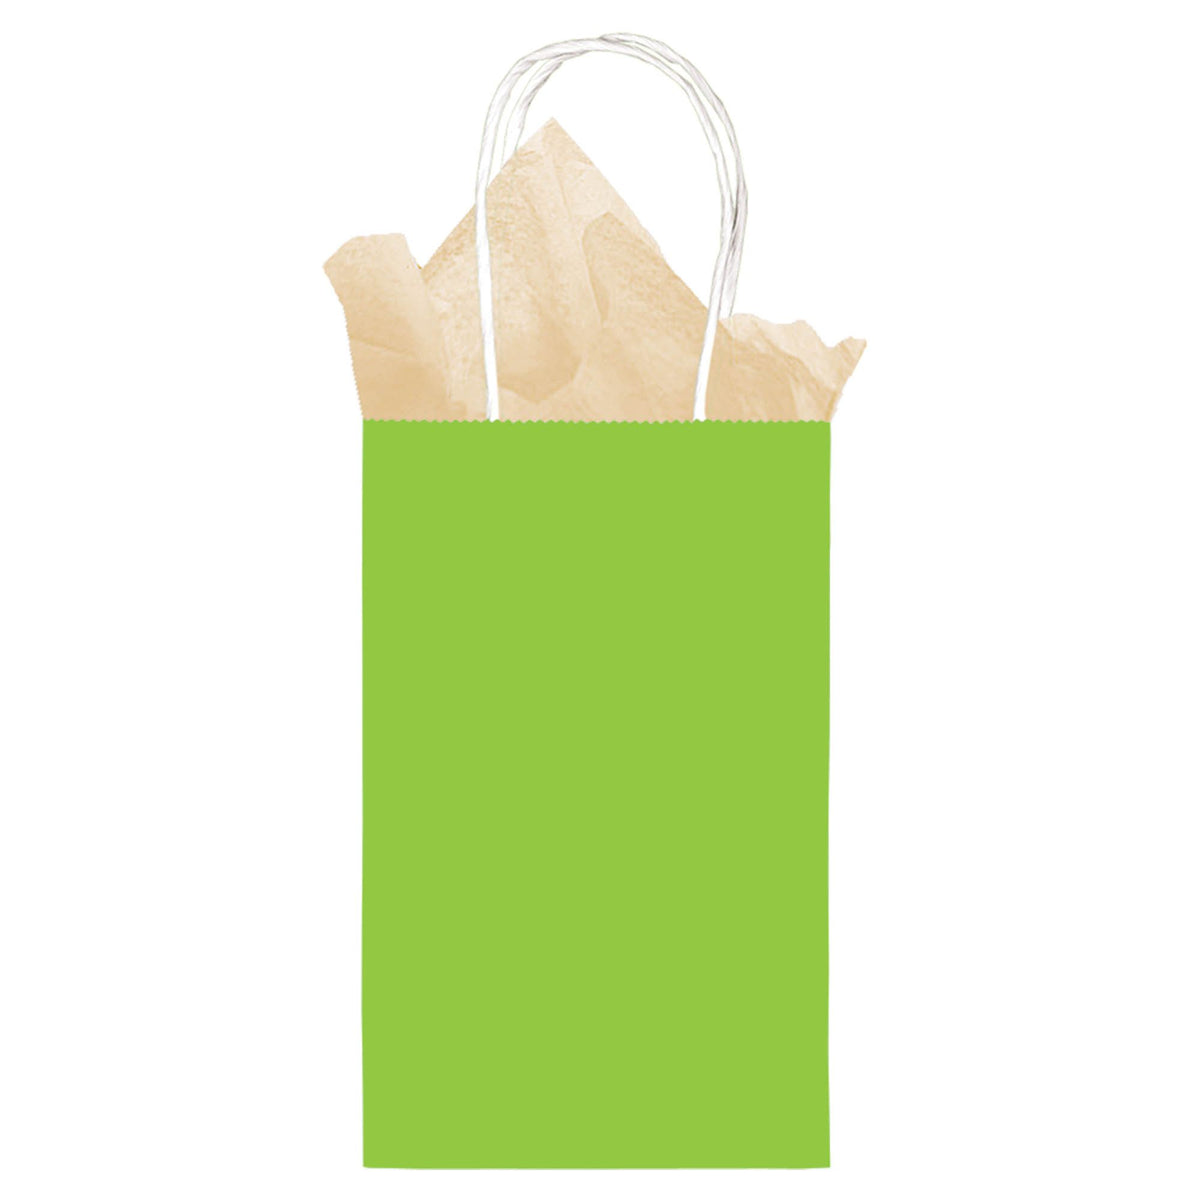 Llime Green Cub Sized Kraft Bags  8 1/2" H x 5 1/4" W x 3 1/2" D